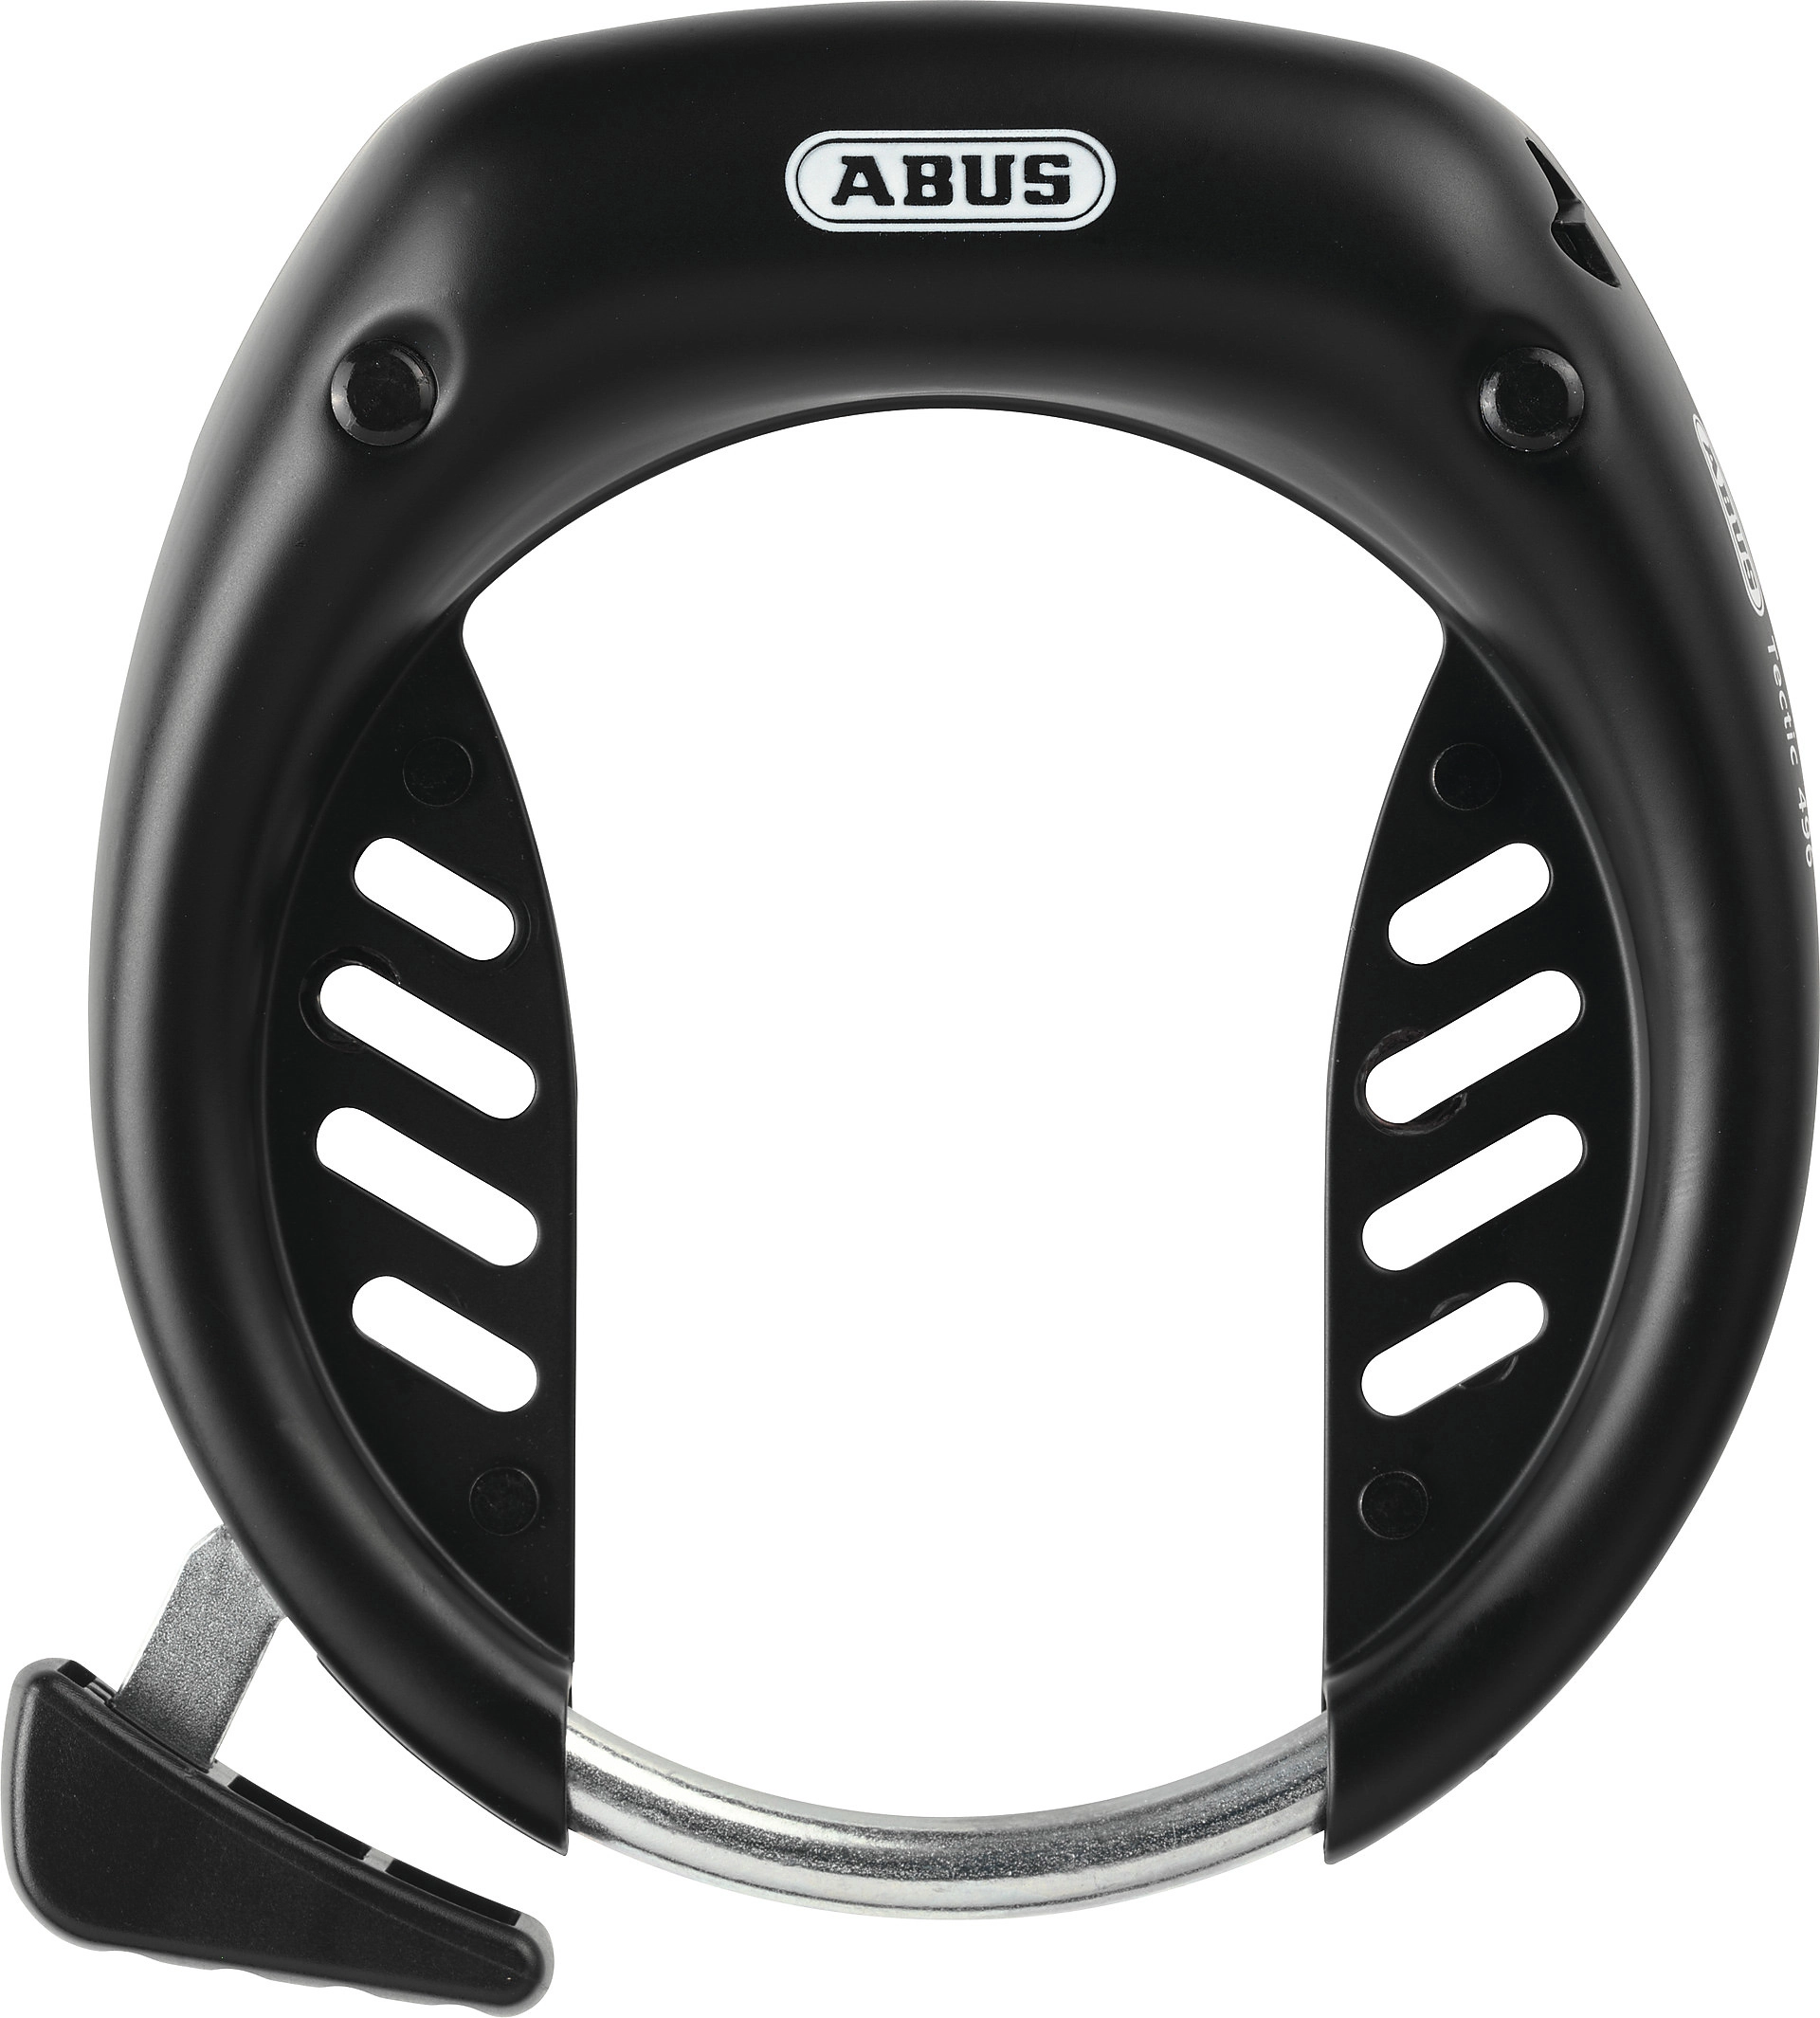 Mehr Sicherheit mit ABUS Fahrradkette PRO Shield